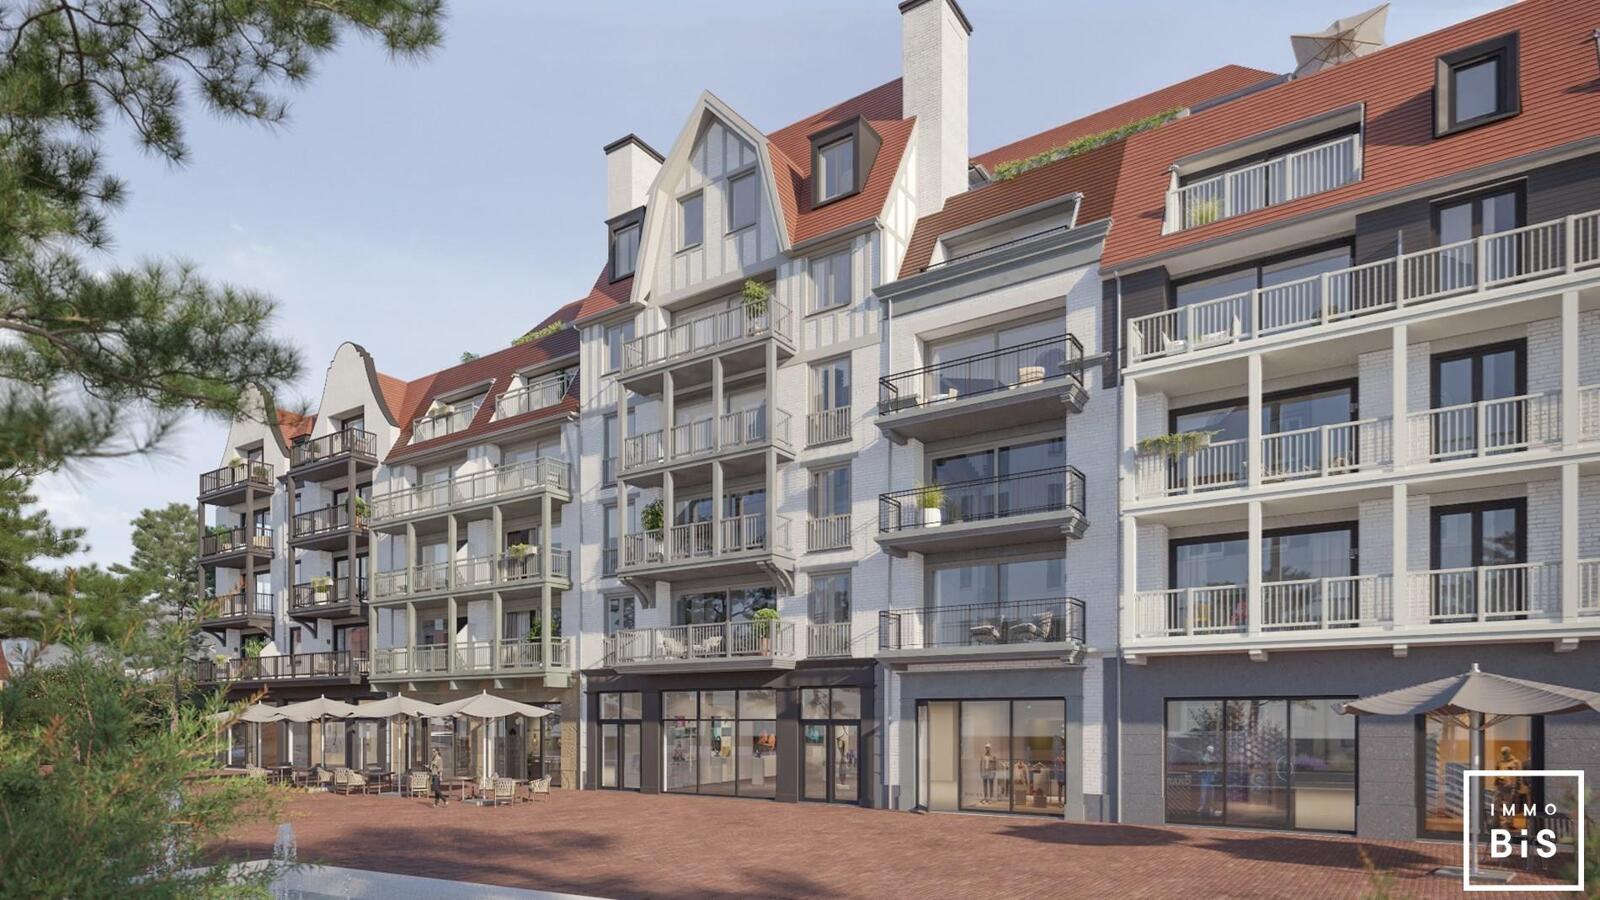 " Appartement villa moderne avec terrasse sur la Digue à Cadzand - Résidence Duinhof-Noord " 3